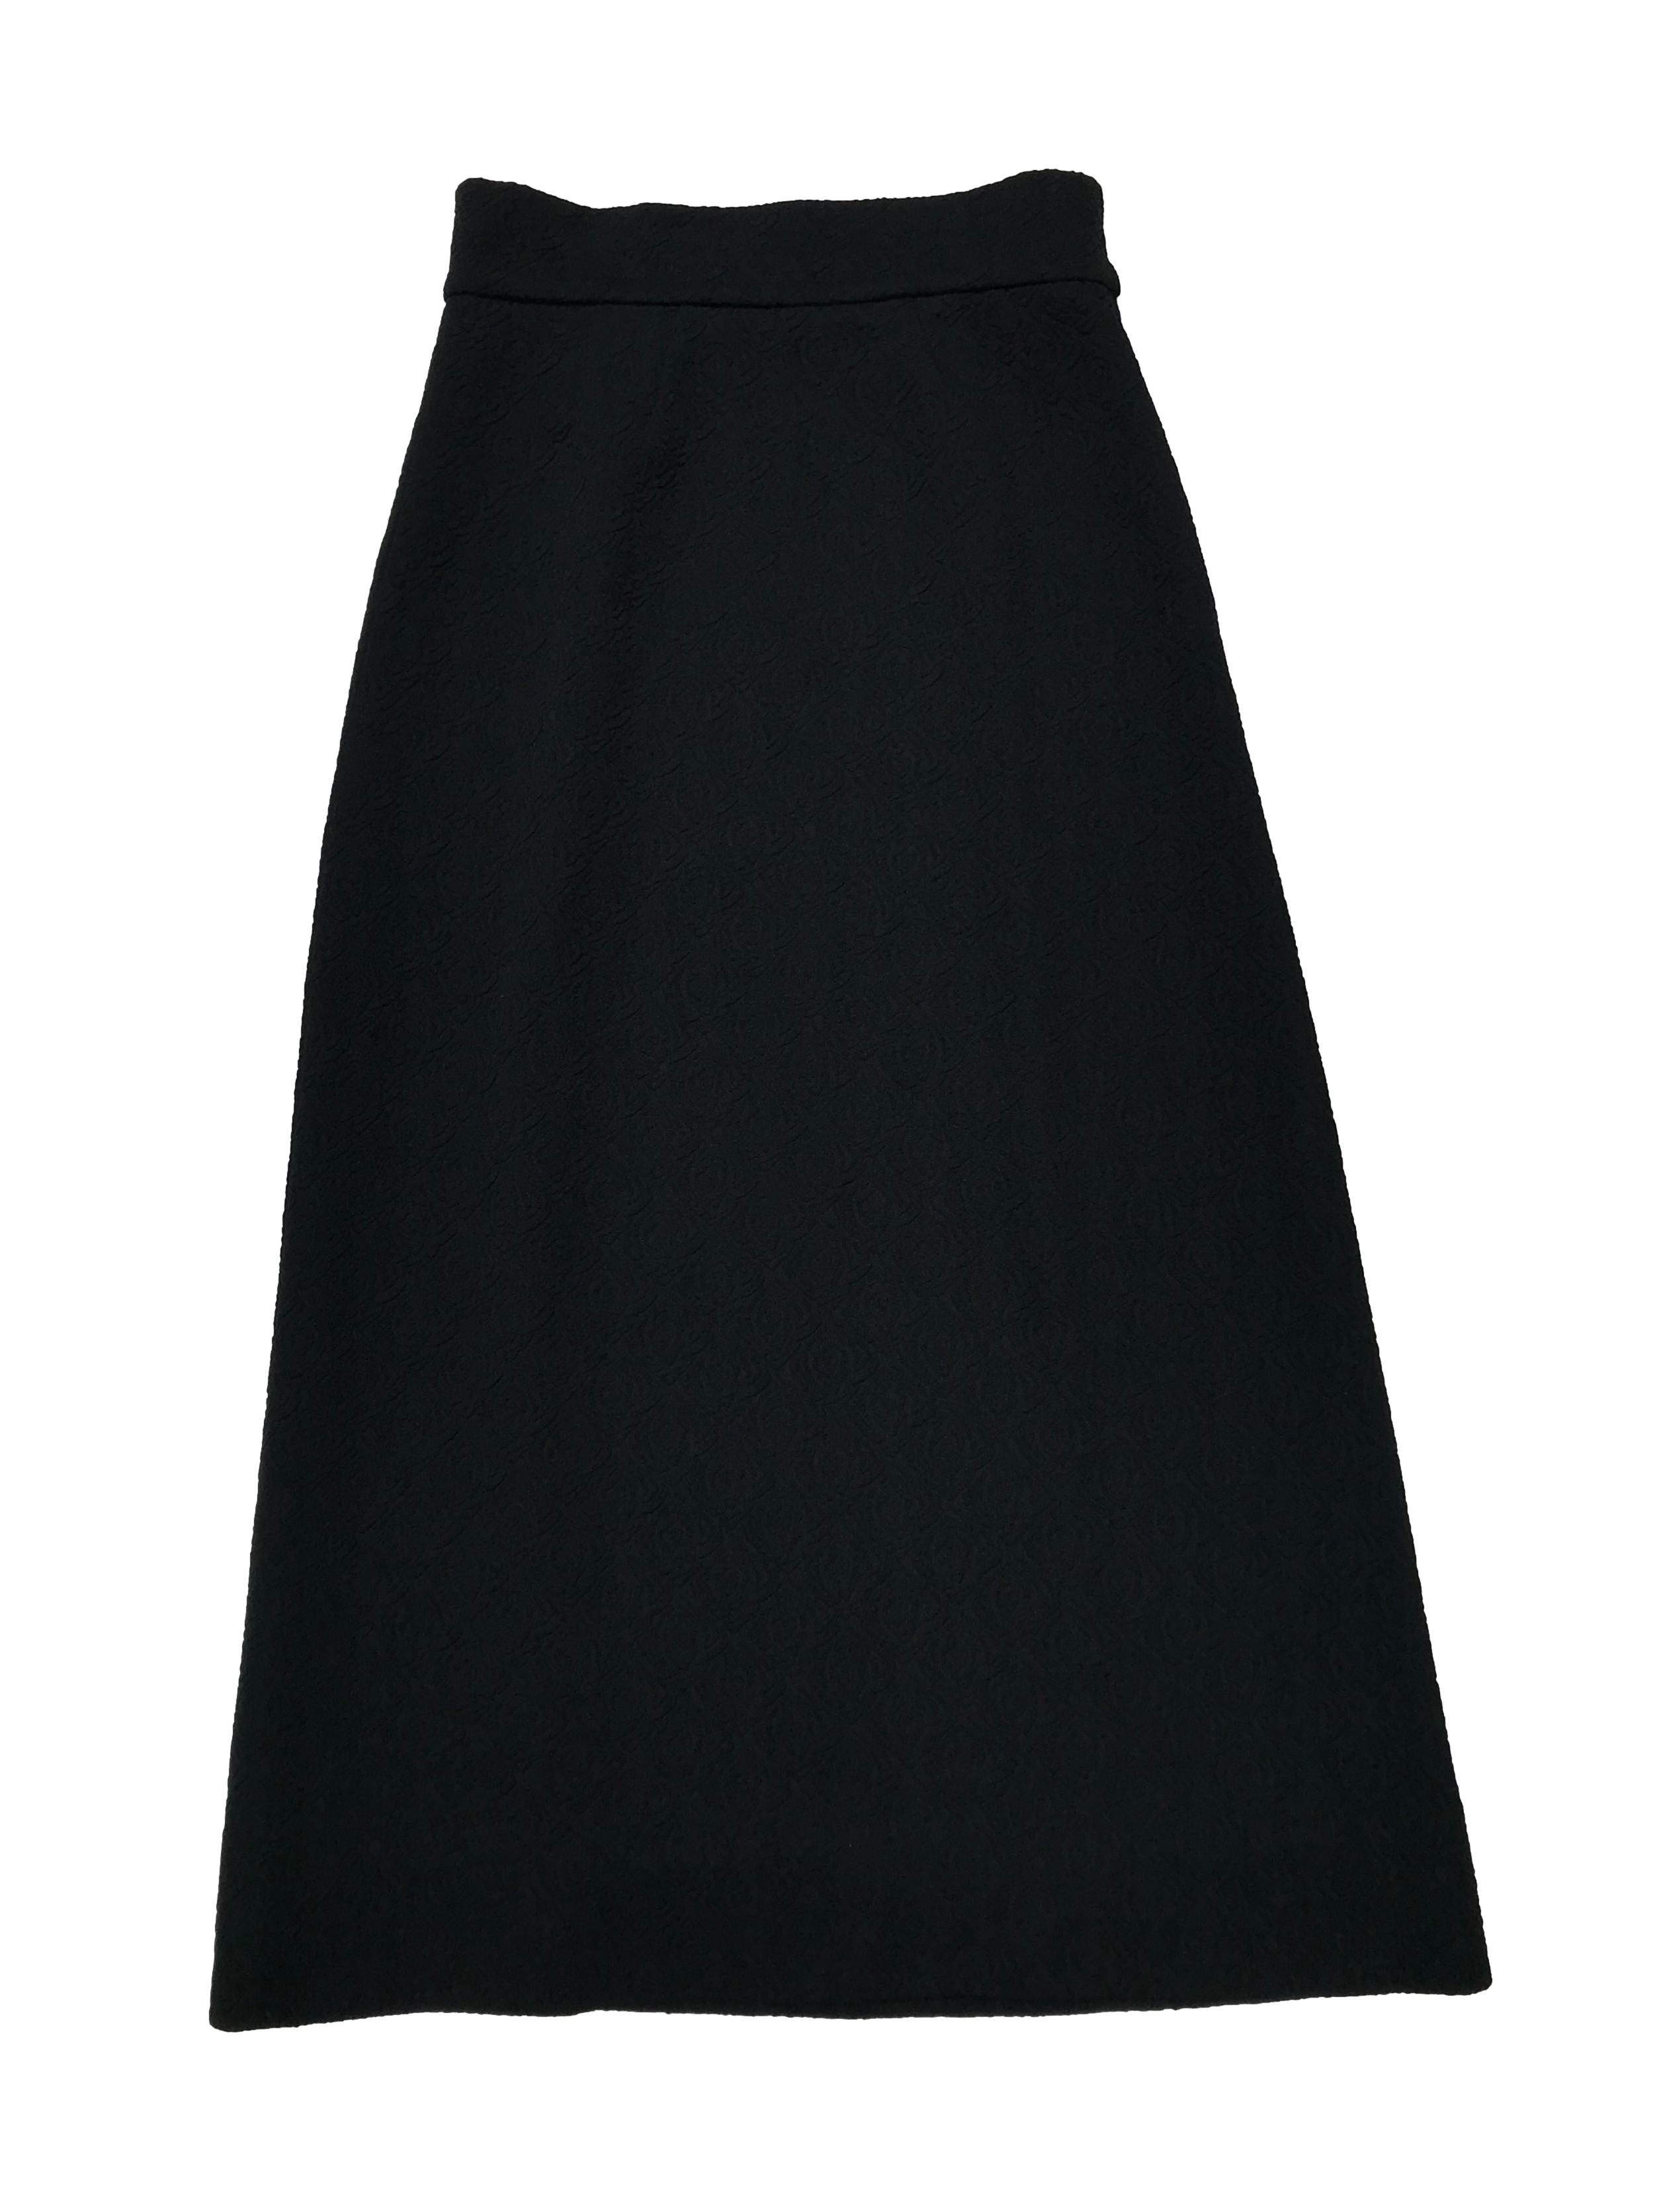 Falda larga vintage negra de tela estructurada con textura de rosas, tiene cierre lateral. Cintura 74cm Largo 95cm